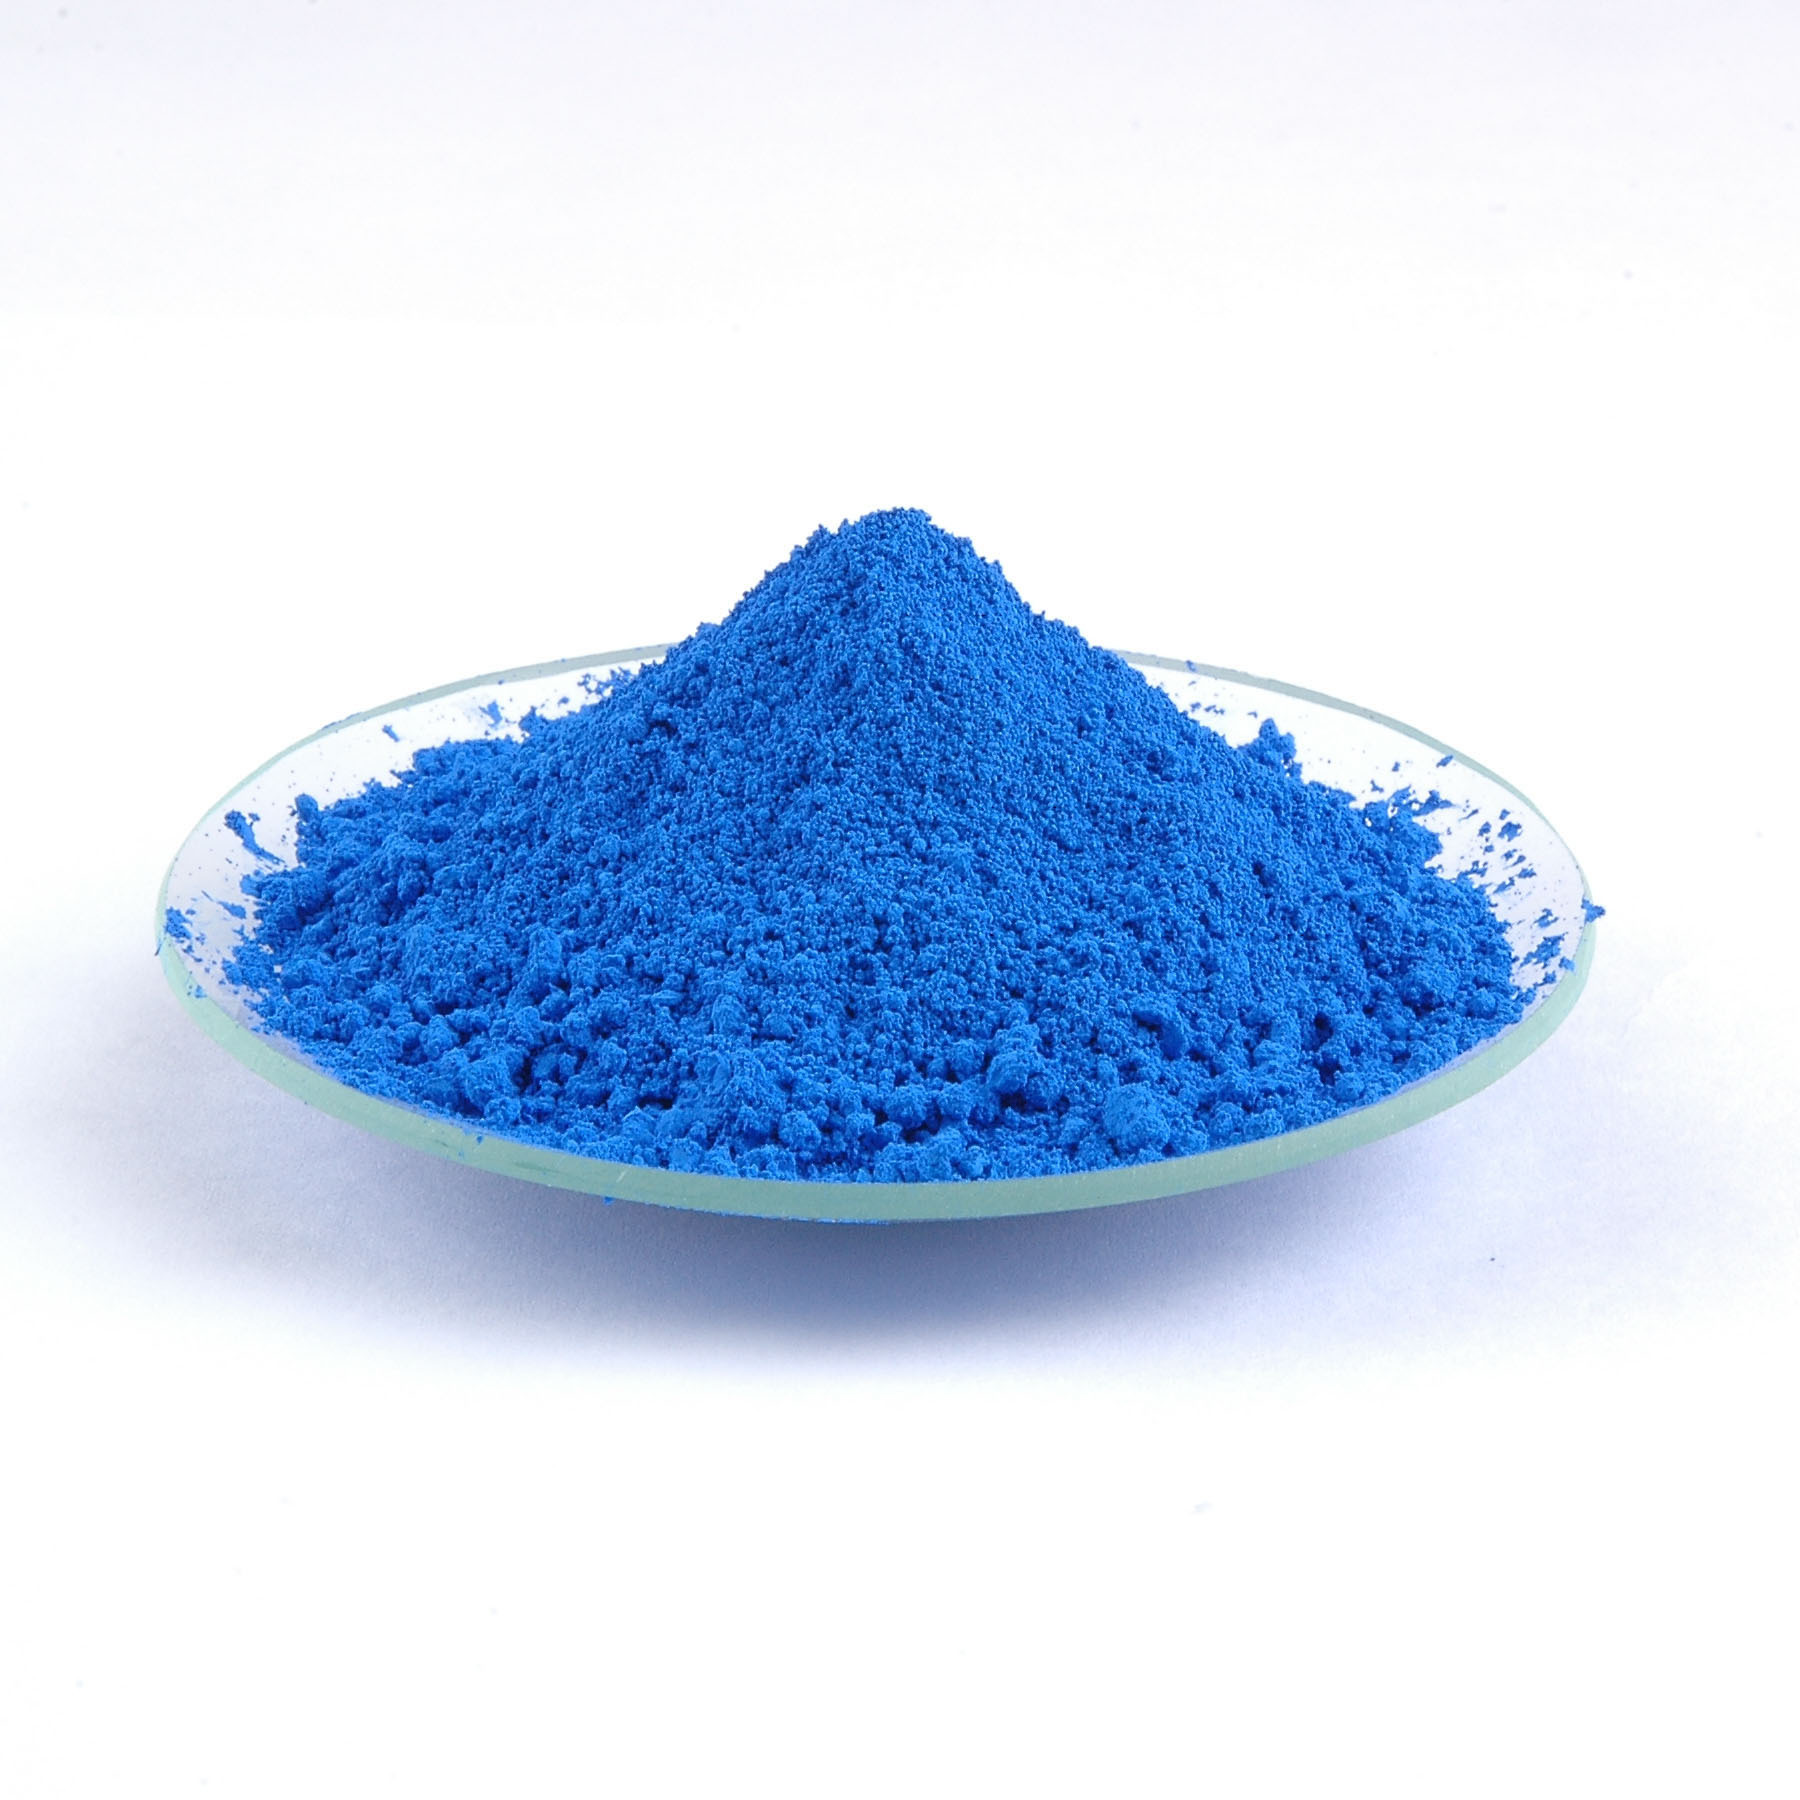 Nano cobalt blue Cobalt aluminate CoAl2O4